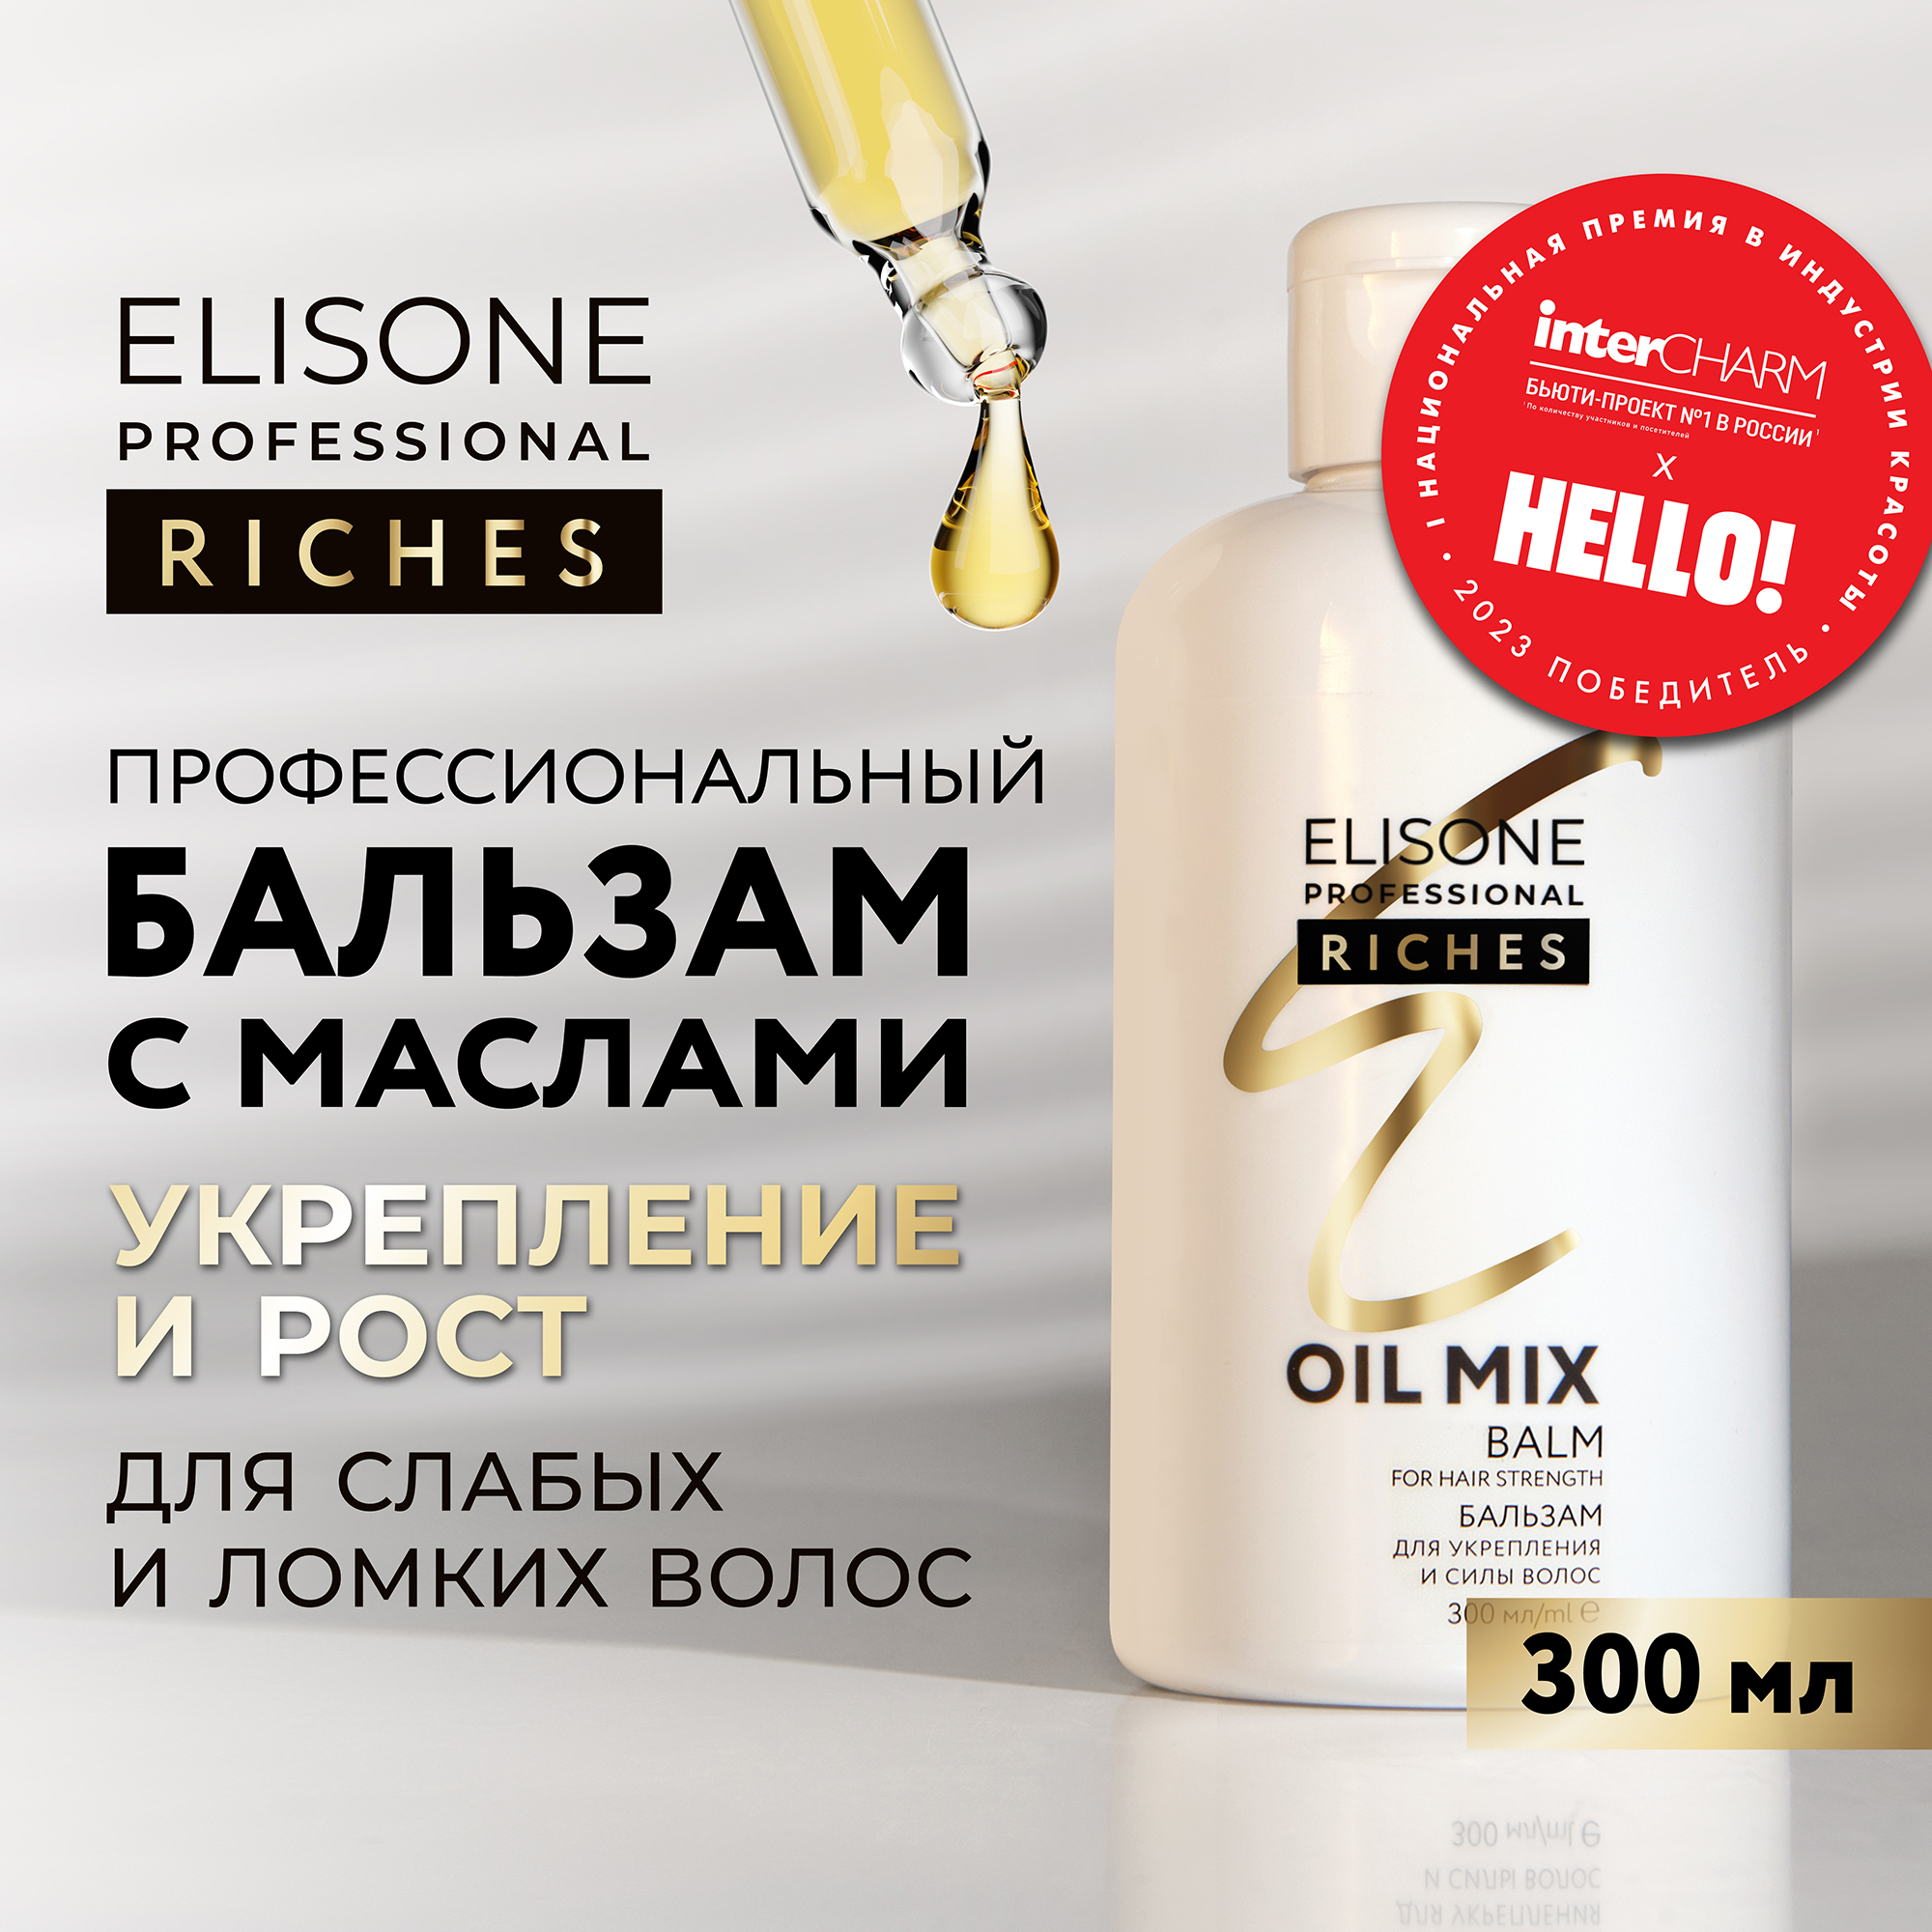 Бальзам RICHES для укрепления волос ELISONE PROFESSIONAL 300 мл